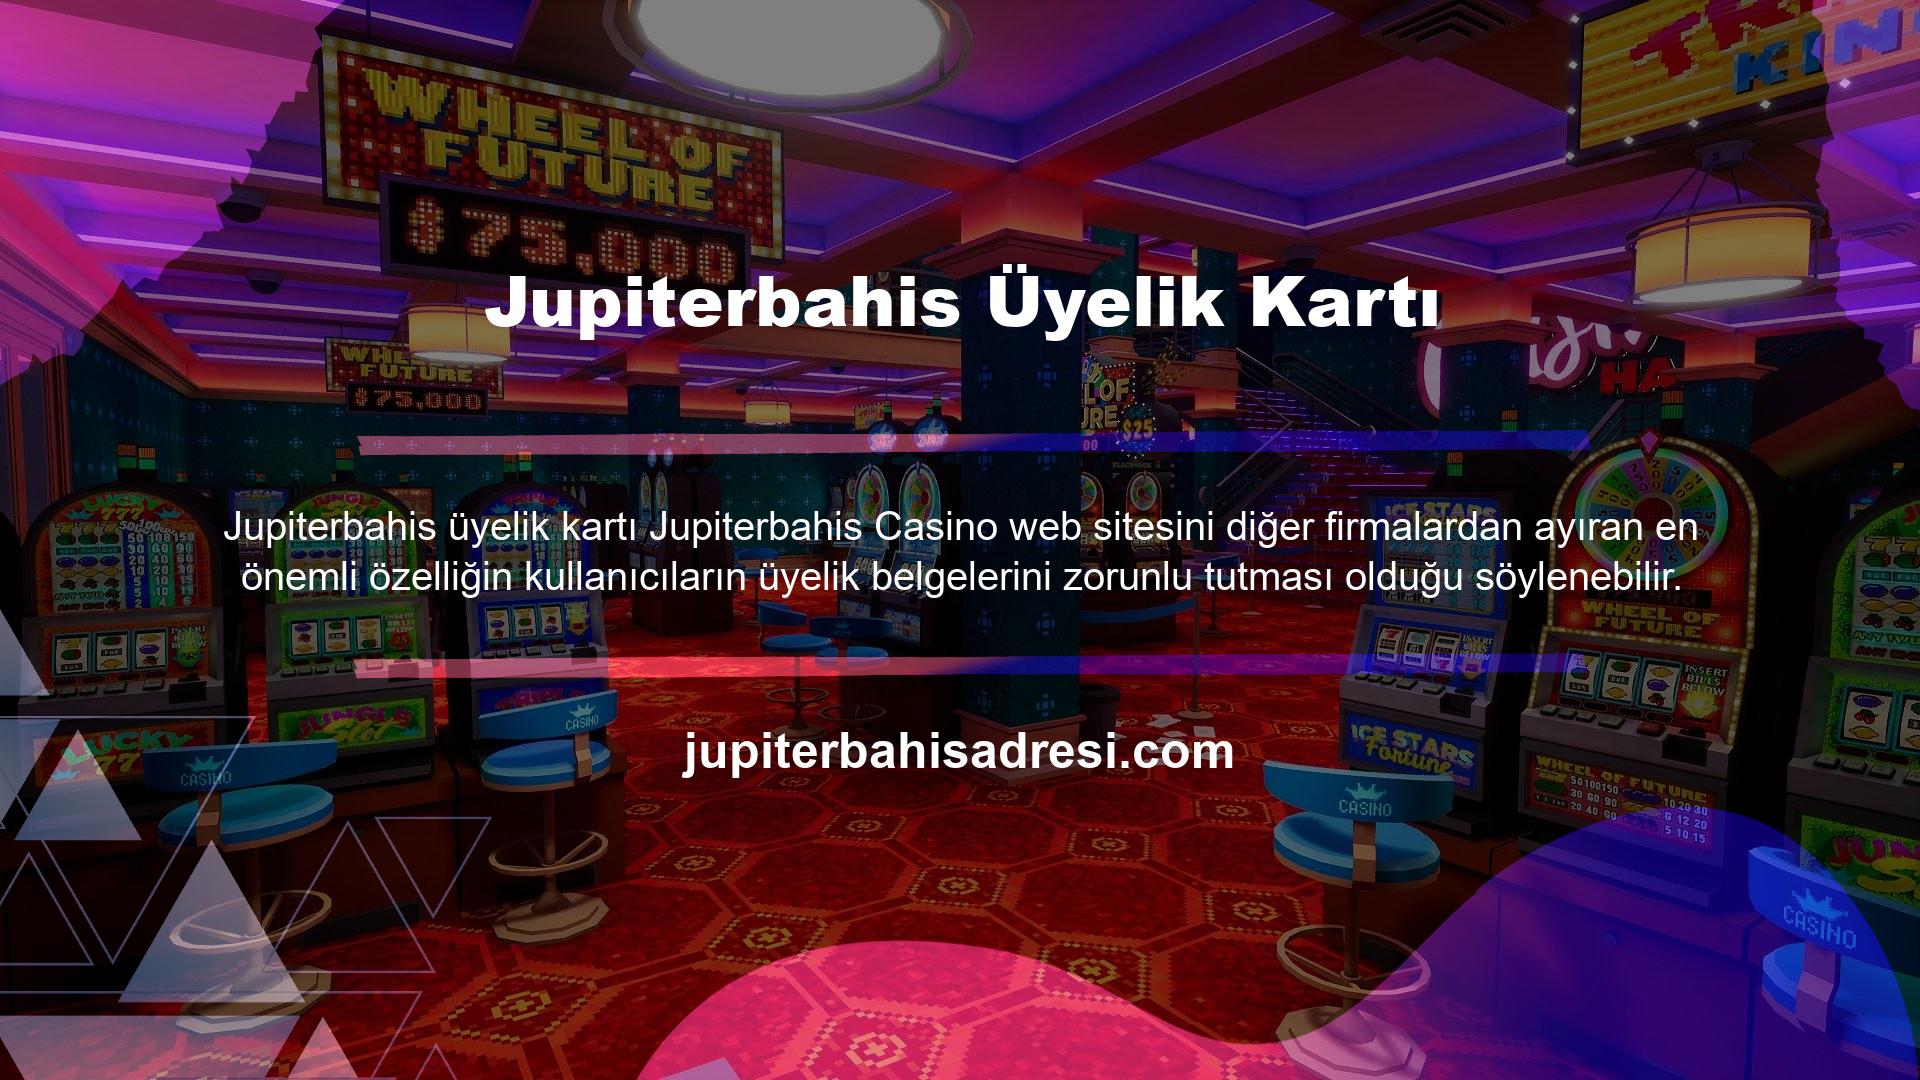 Sitenin güvenilirliğini garanti ettiği için casino tutkunları sitede güvenle oyun oynayabilirler